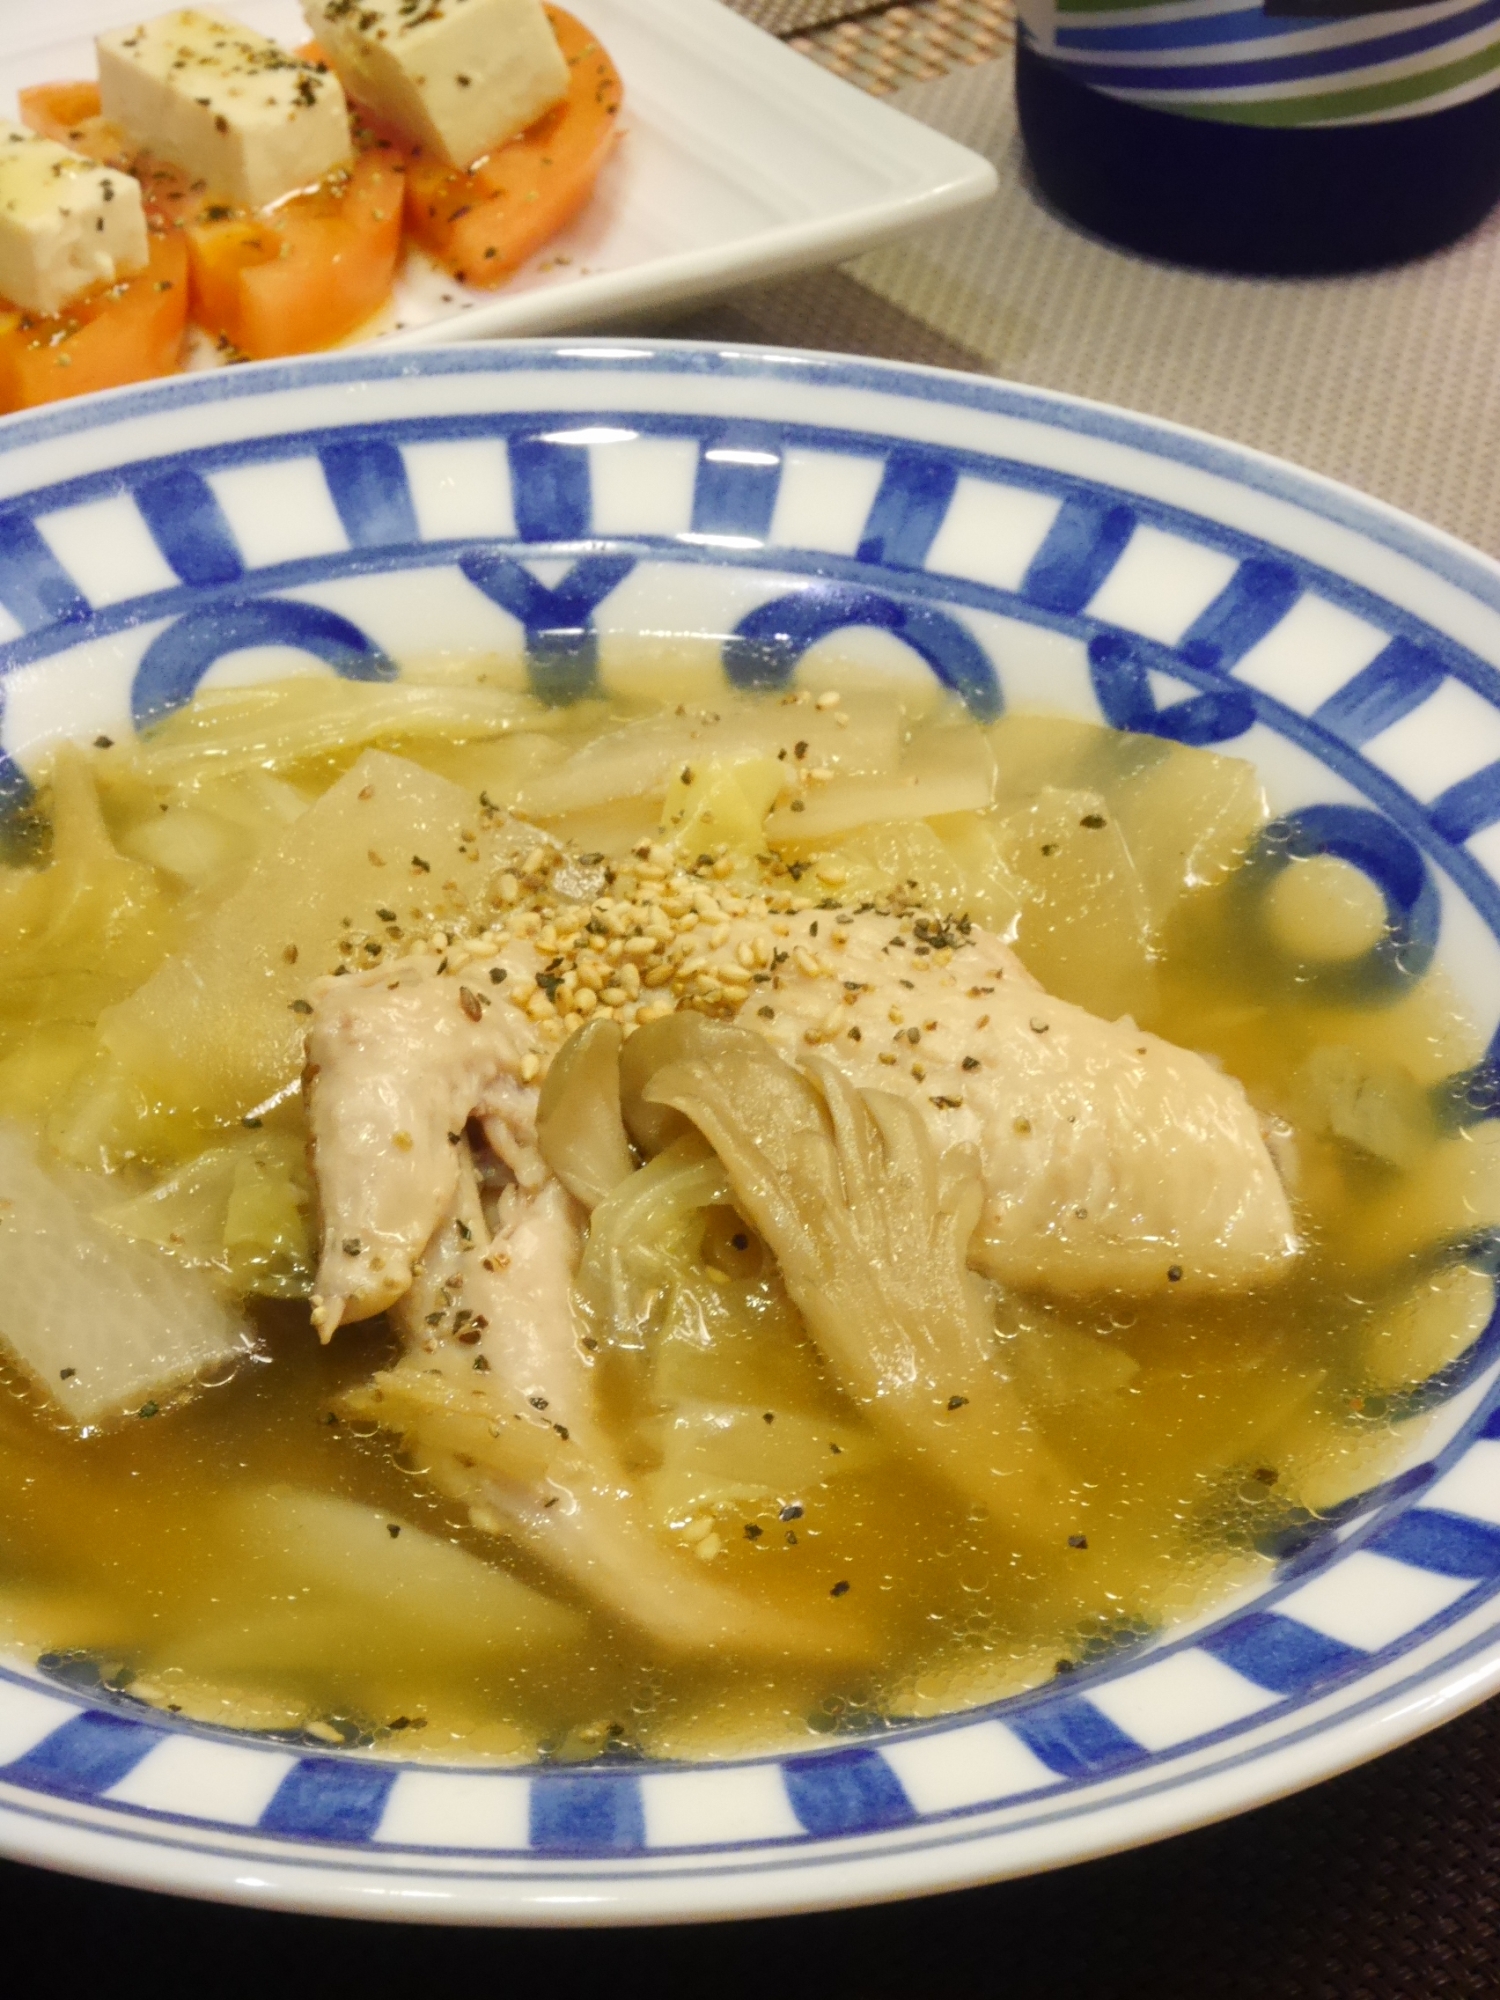 圧力鍋でとろとろ生姜でポカポカ★手羽先の中華スープ